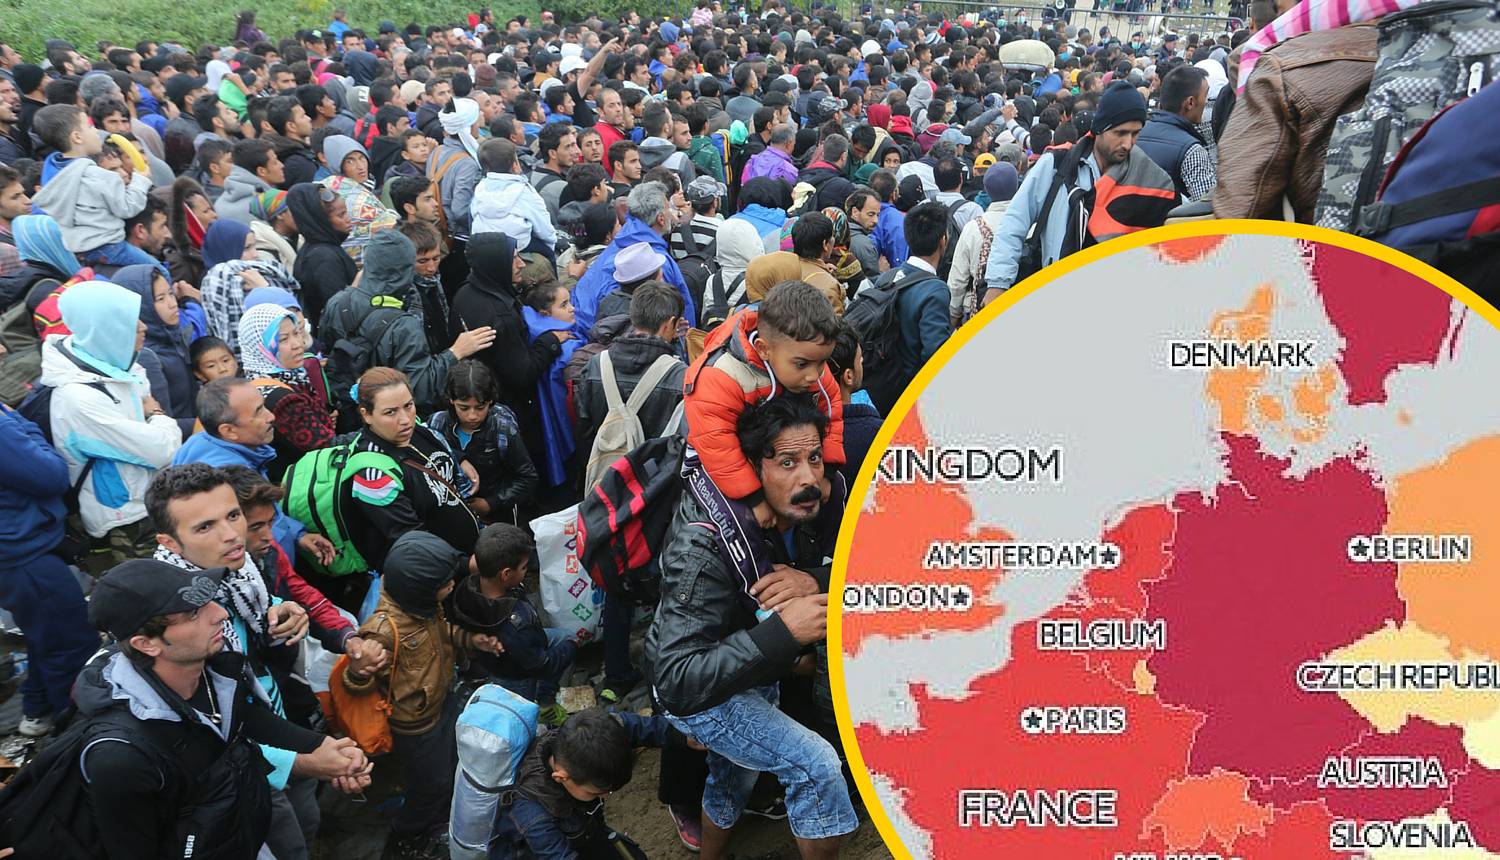 Migranti hrle u EU: Pogledajte koliko ih traži azil u Hrvatskoj